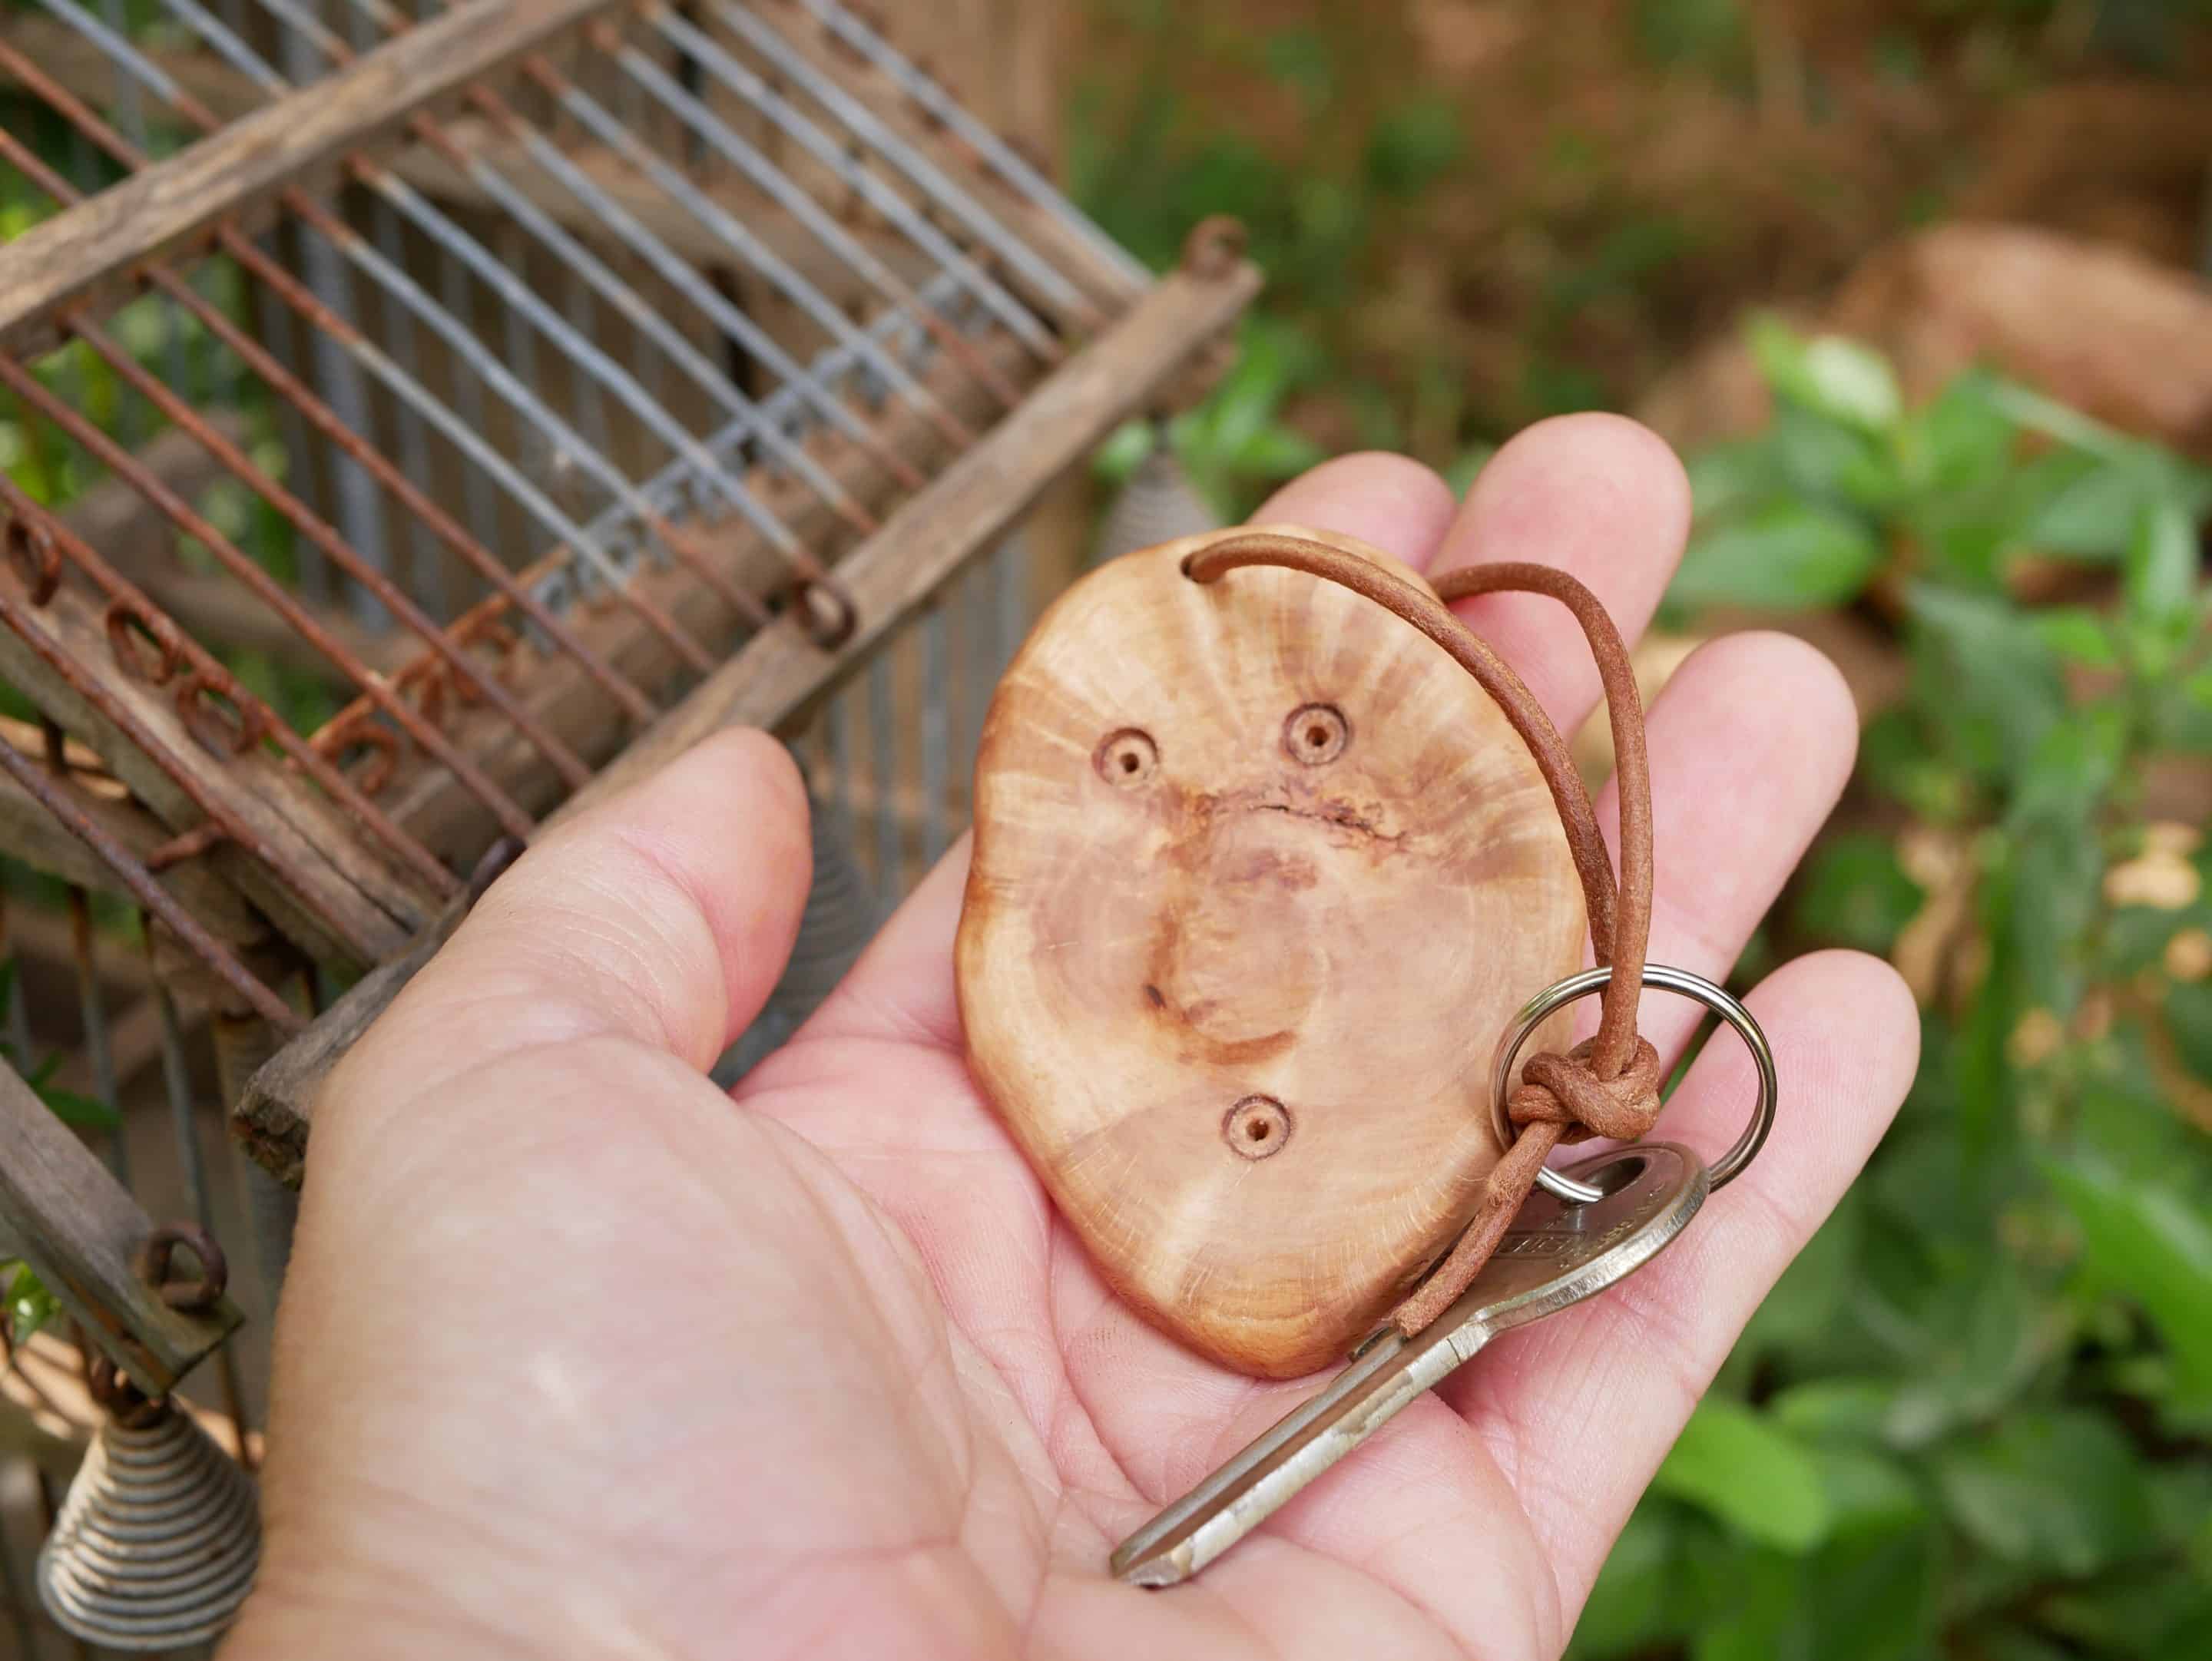 Schlüsselanhänger als Schlüsselkumpel aus Baumperle